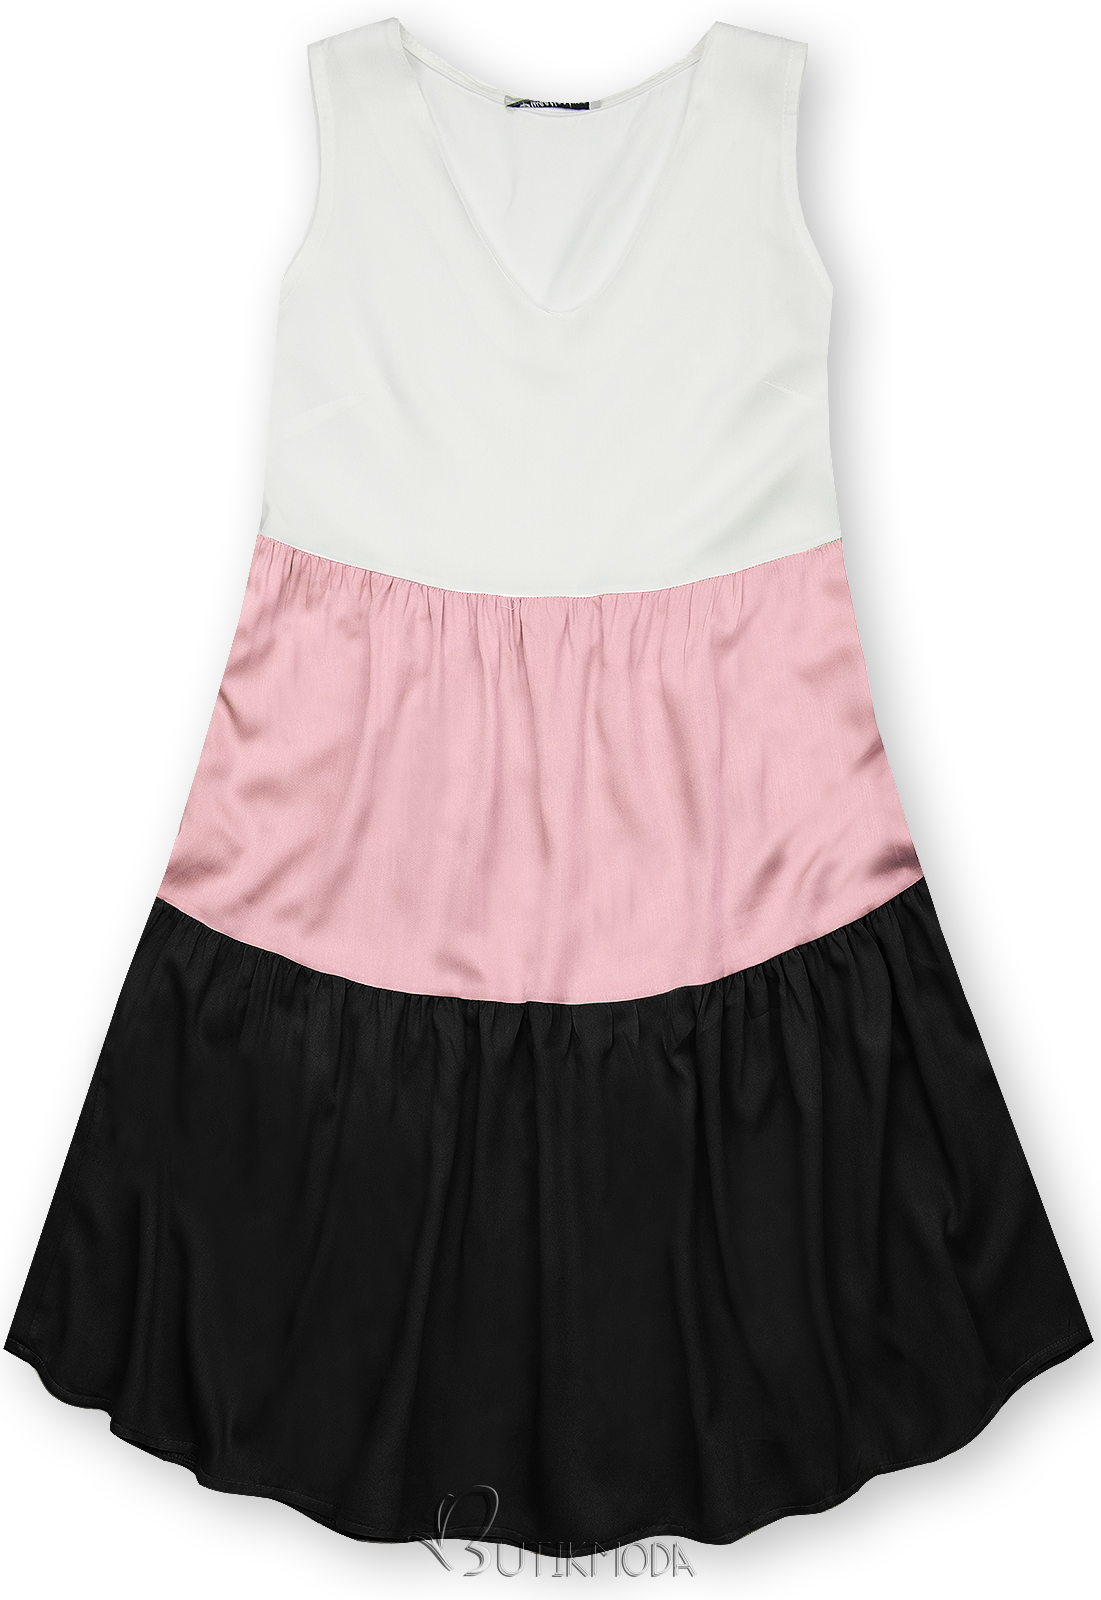 Fehér, fekete és rózsaszínű nyári viszkóz ruha